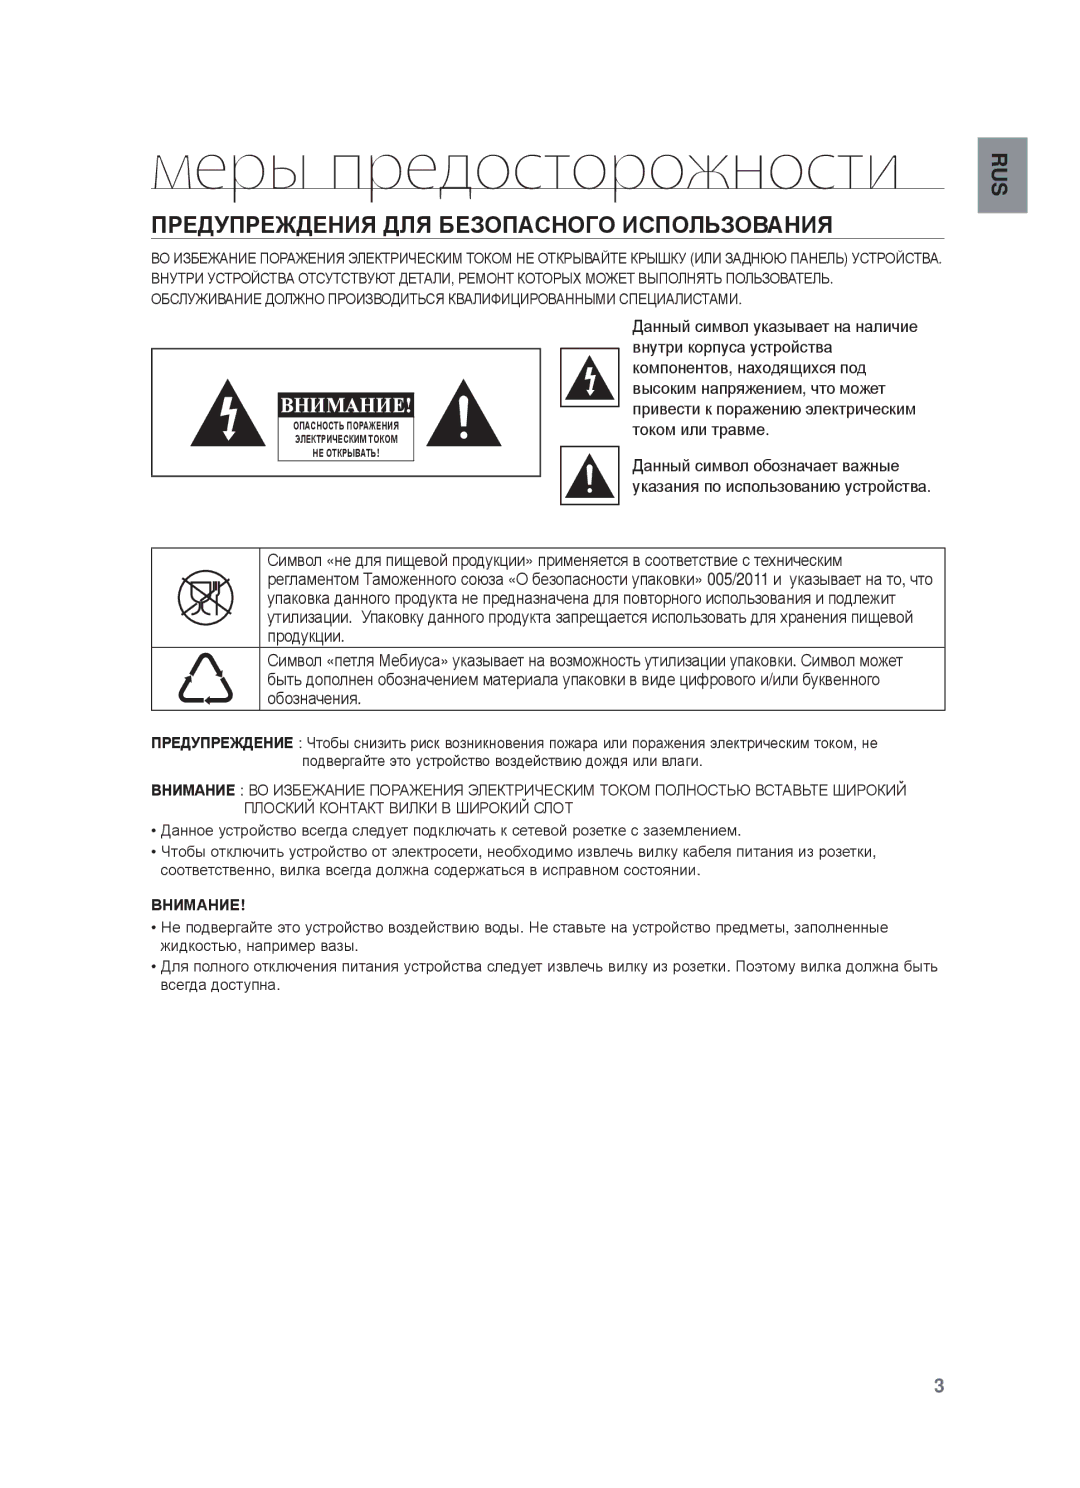 Samsung HW-F750/RU manual Меры предосторожности, ПɊȿДУПɊȿЖДȿɇИЯ ДЛЯ БȿЗɈПȺɋɇɈГɈ ИɋПɈЛЬЗɈȼȺɇИЯ 